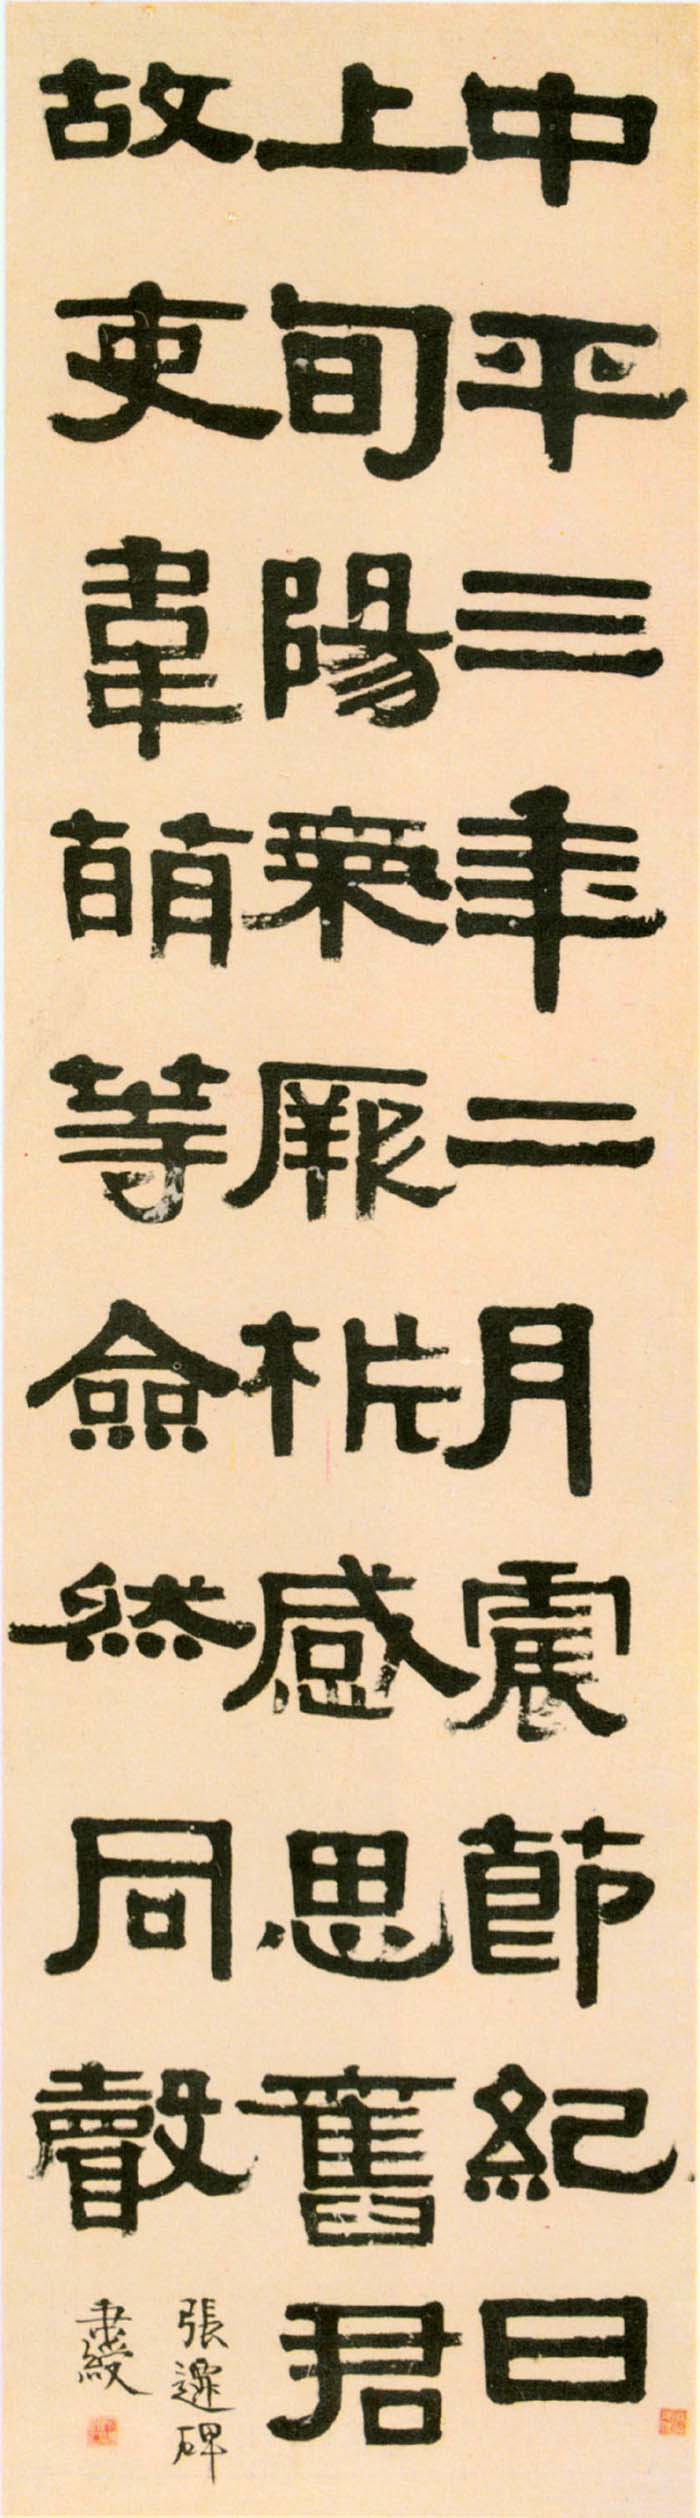 伊秉绶《临张迁碑轴》-四川省博物馆藏(图1)